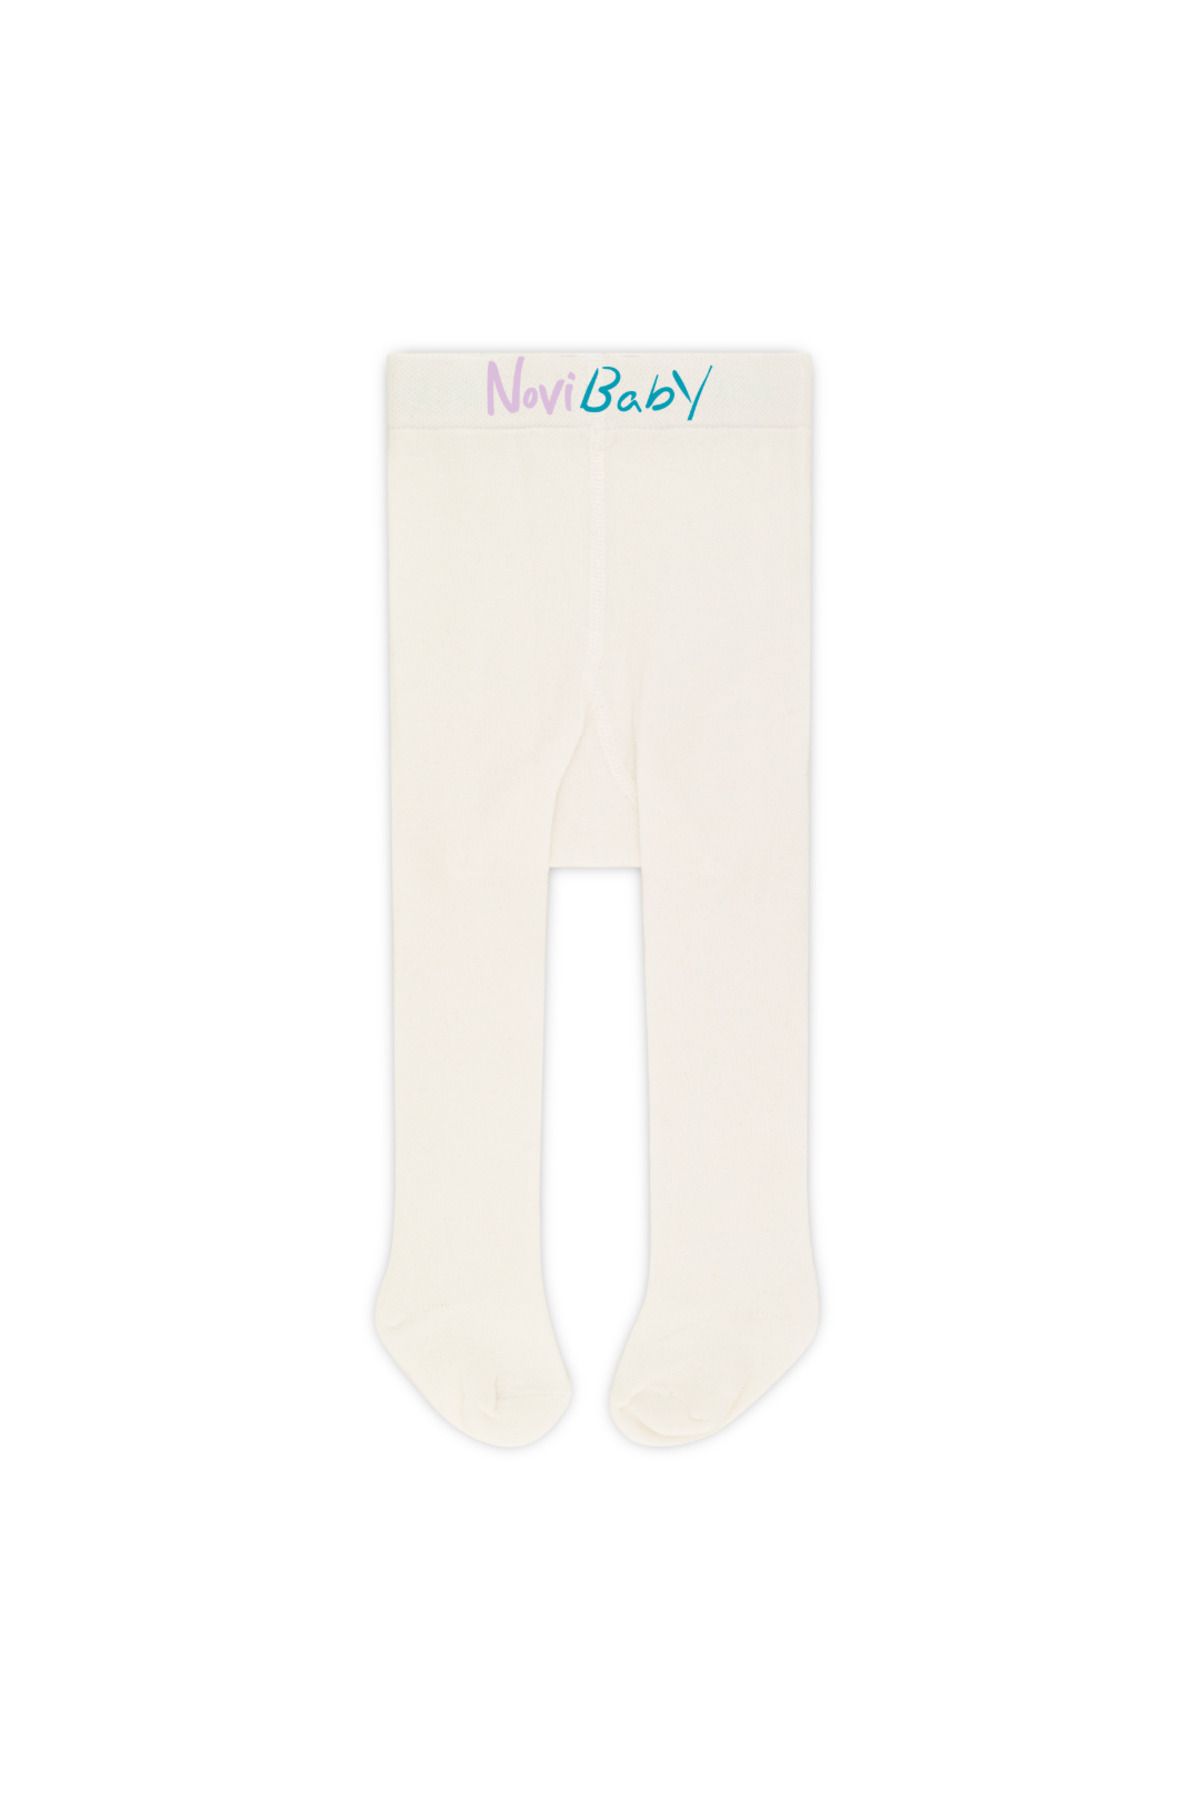 Novibaby Bebek Pamuklu Külotlu Çorap, Çocuk Yenidoğan Pamuk Kız Erkek Okul Çorabı, Beyaz Ekru Pembe Siyah Gri